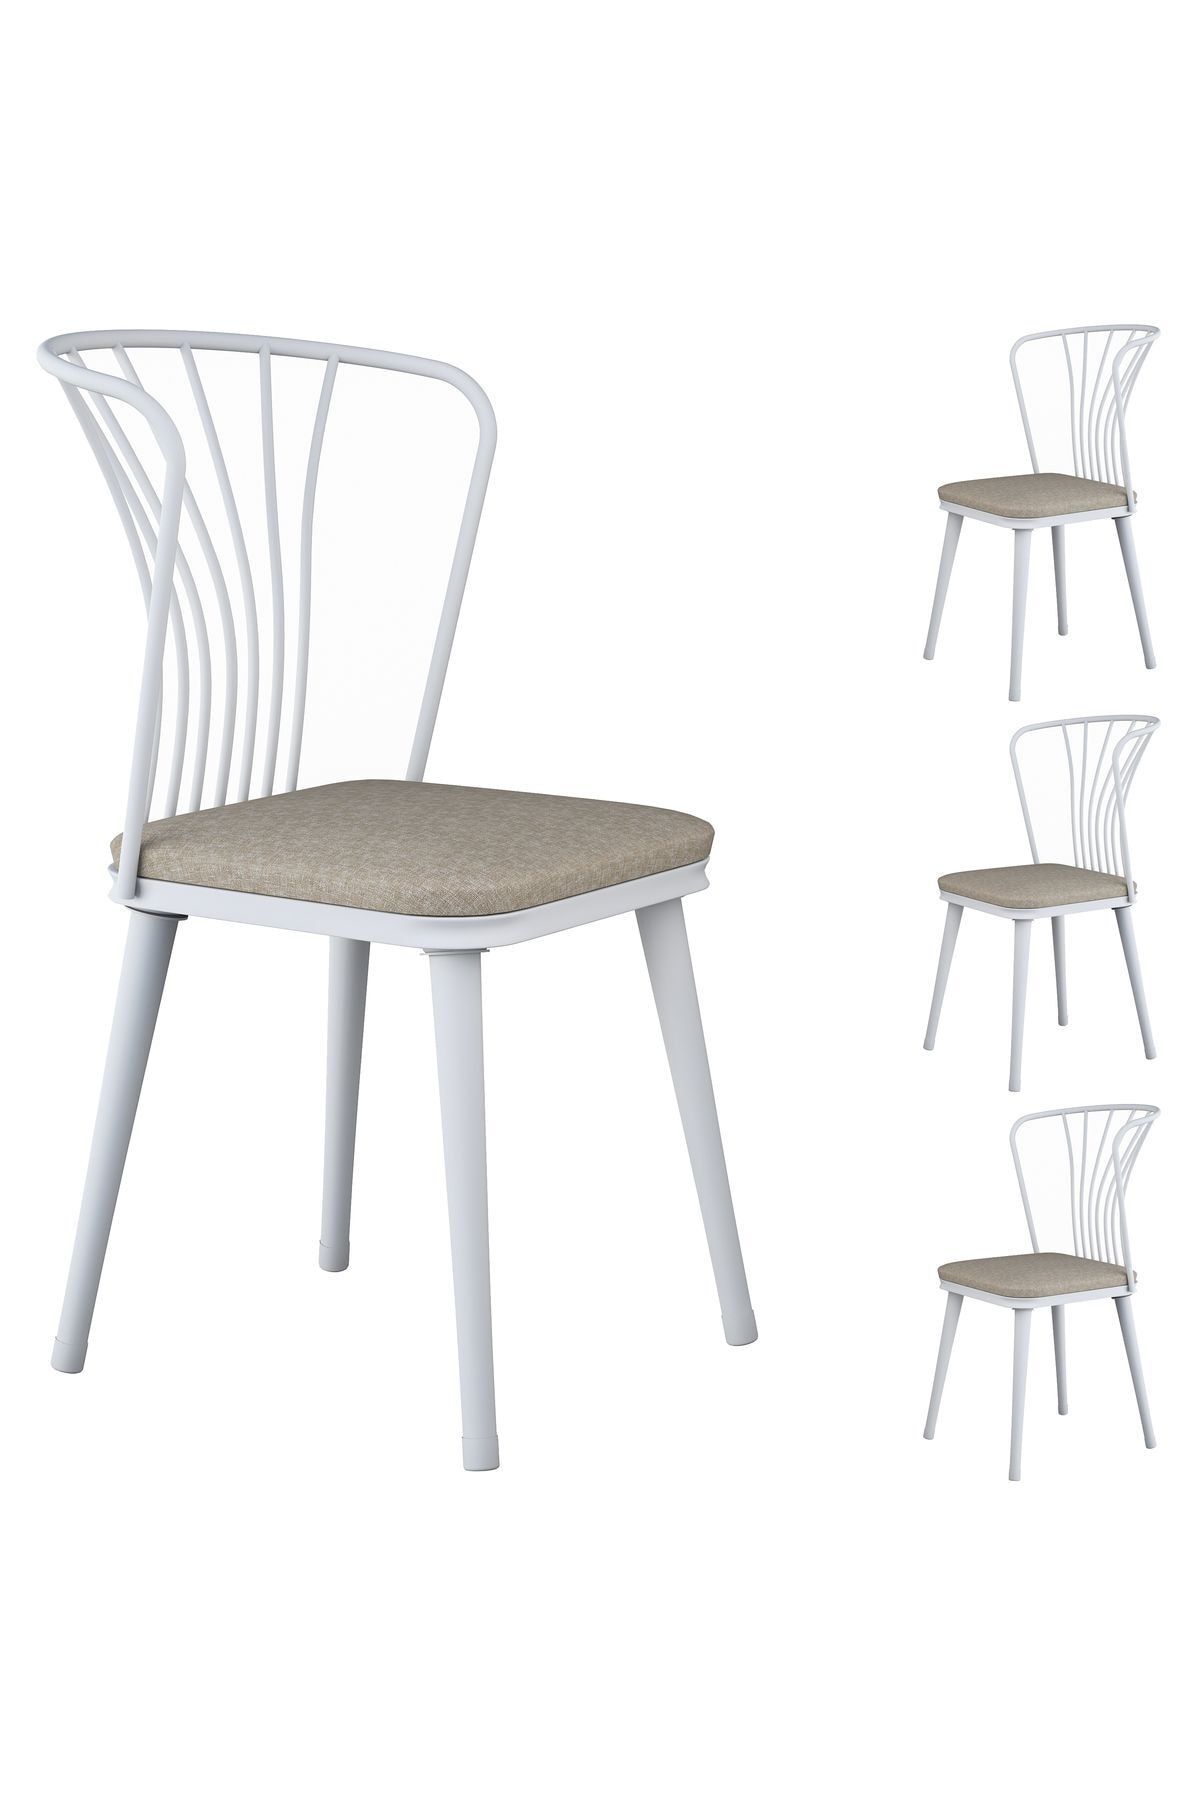 Rani Mobilya Rani Jb104 Metal Sandalye 4'lü Mutfak Yemek Masası Sandalyesi Beyaz - Bej